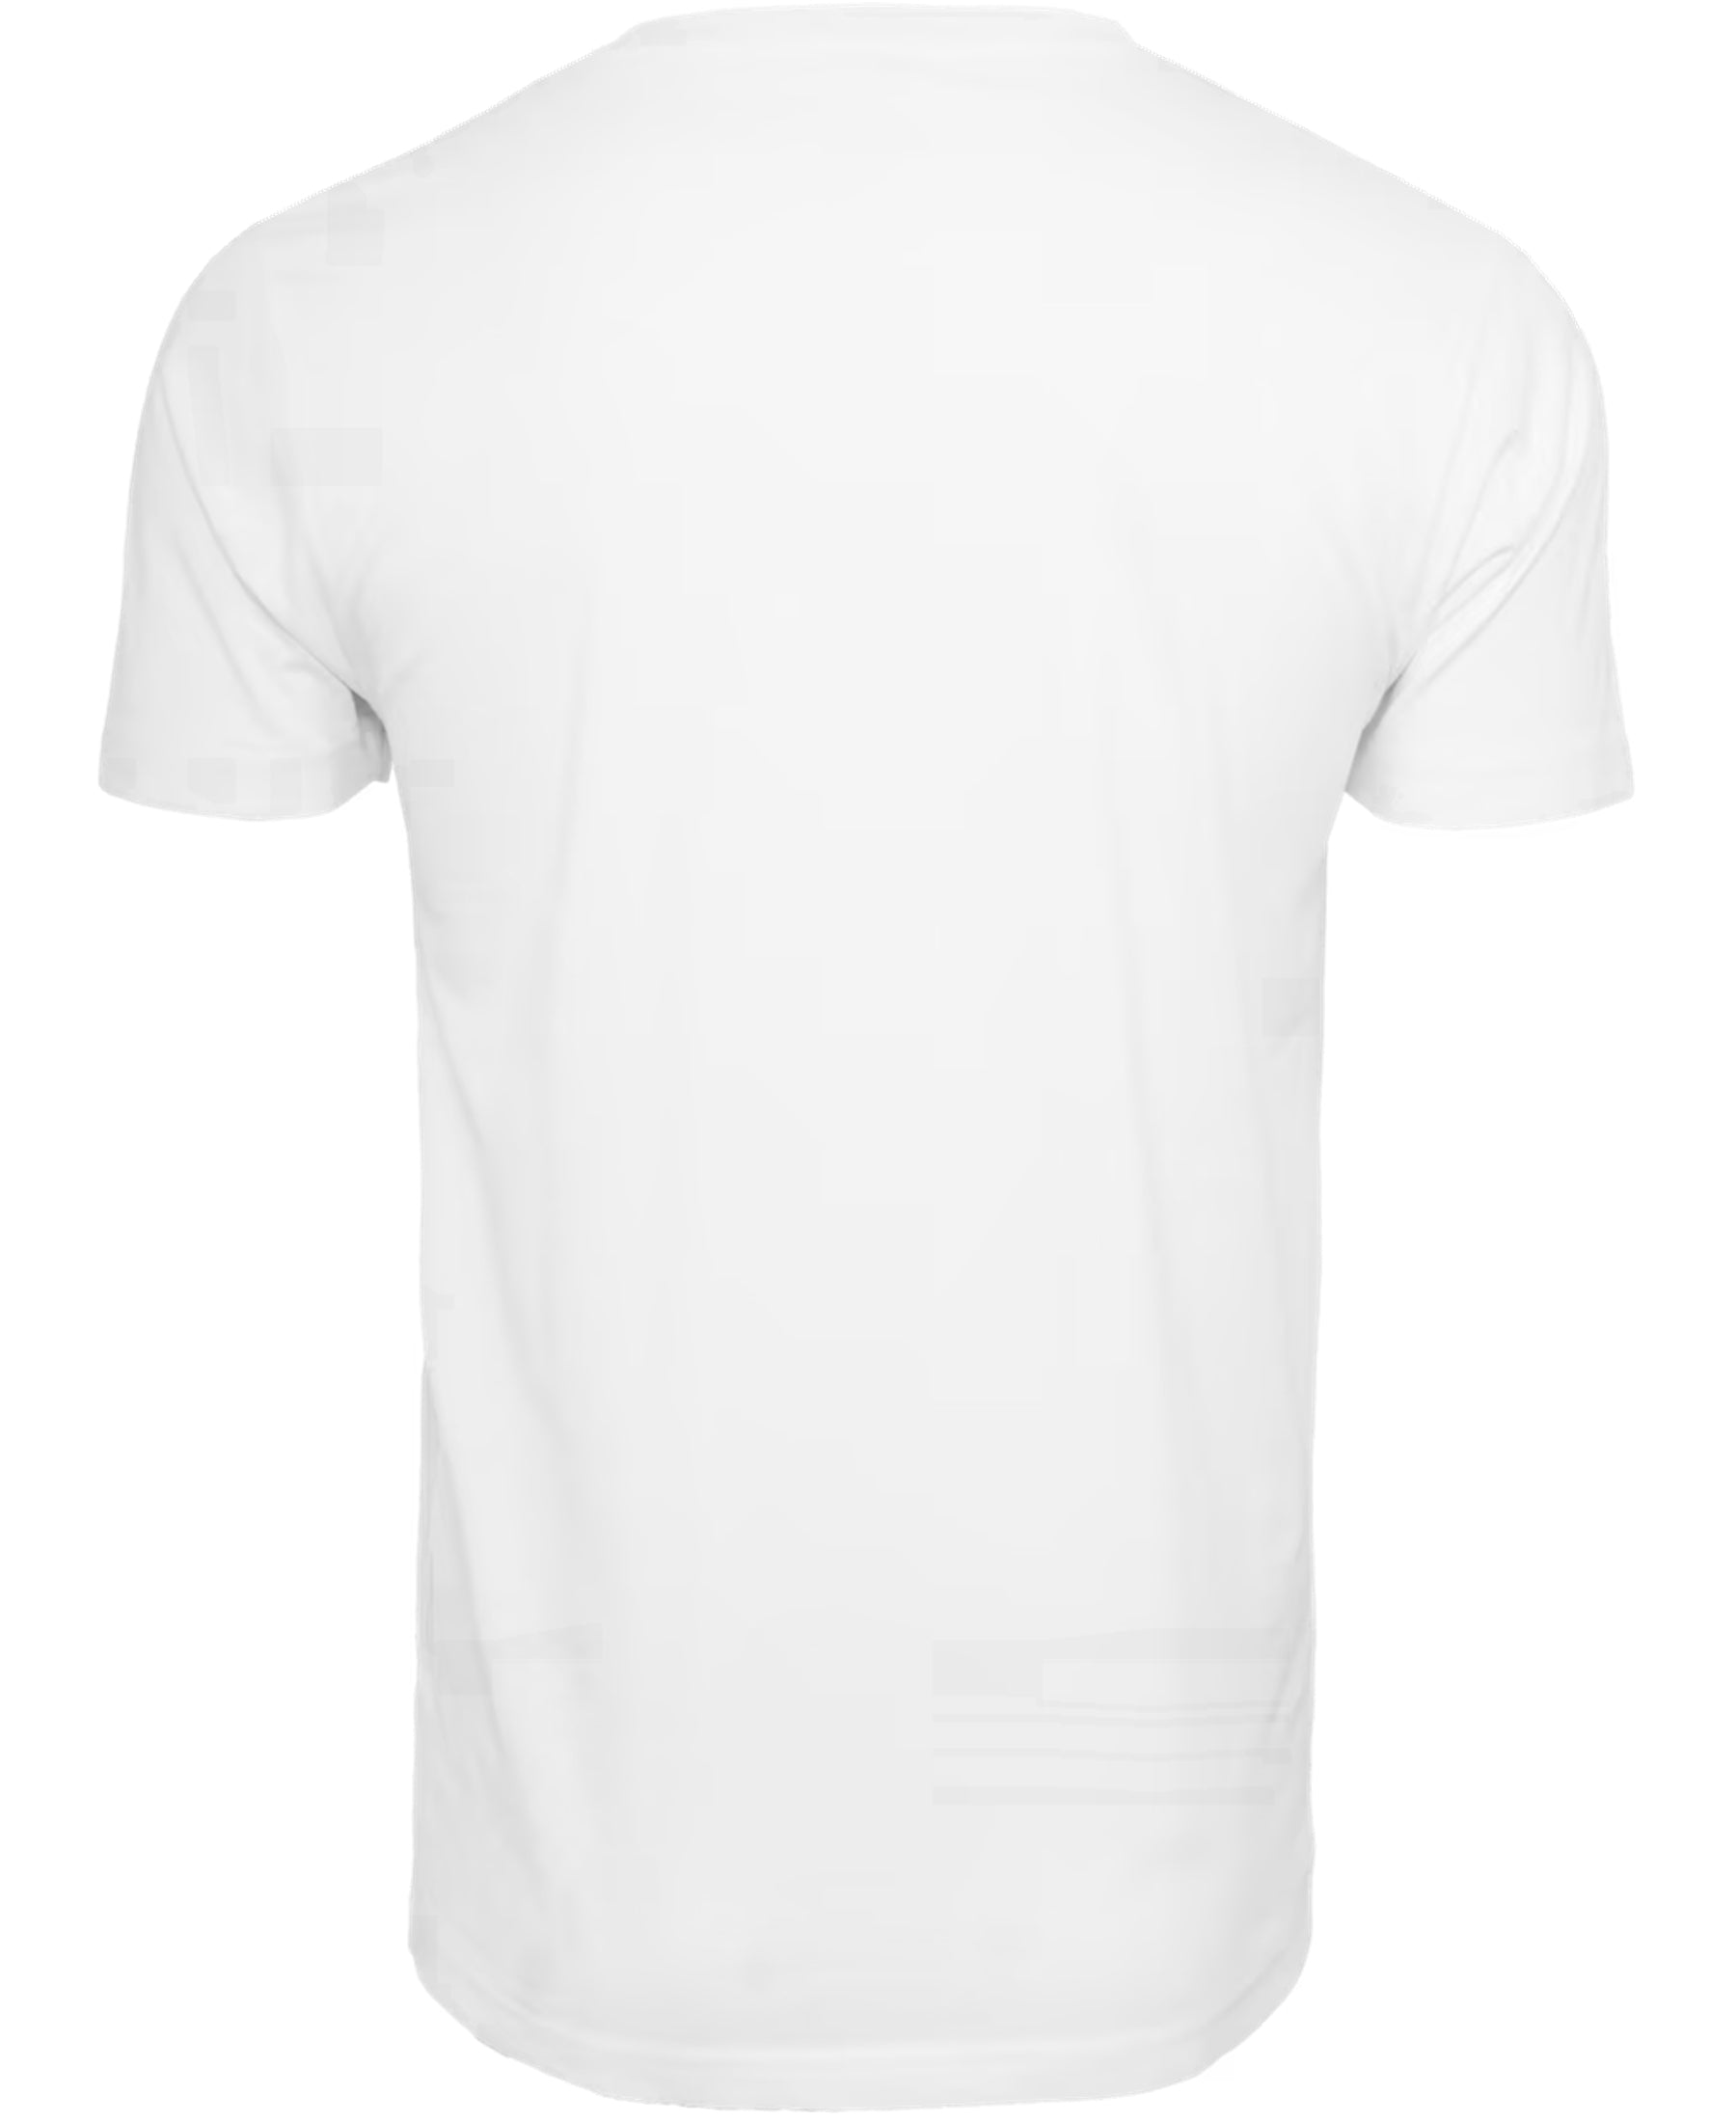 Das FC Bayern München FCB Rainbow T-Shirt (33564) ist ein echtes Highlight für alle Fans des Vereins. Mit seinem modernen Design und hochwertigen Materialien ist es nicht nur stylisch, sondern auch bequem. Holen Sie sich jetzt dieses exklusive Shirt und zeigen Sie Ihre Liebe zum FCB bei SHOP4TEAMSPORT.